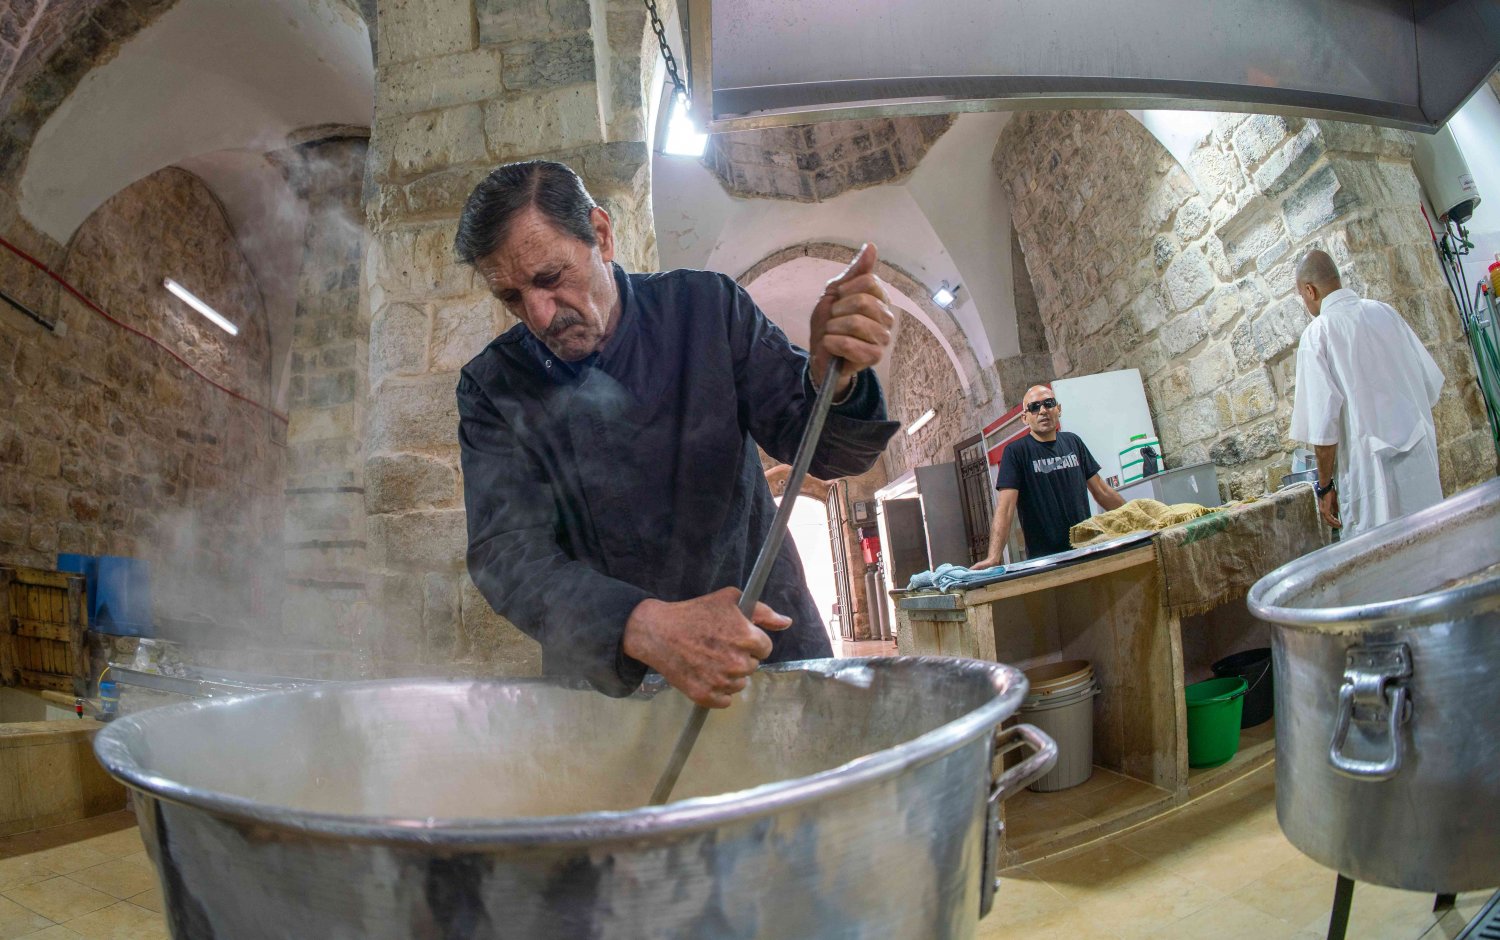 Head Cook Samir Jaber, Khaski Sultan soup kitchen, Old City of Jerusalem